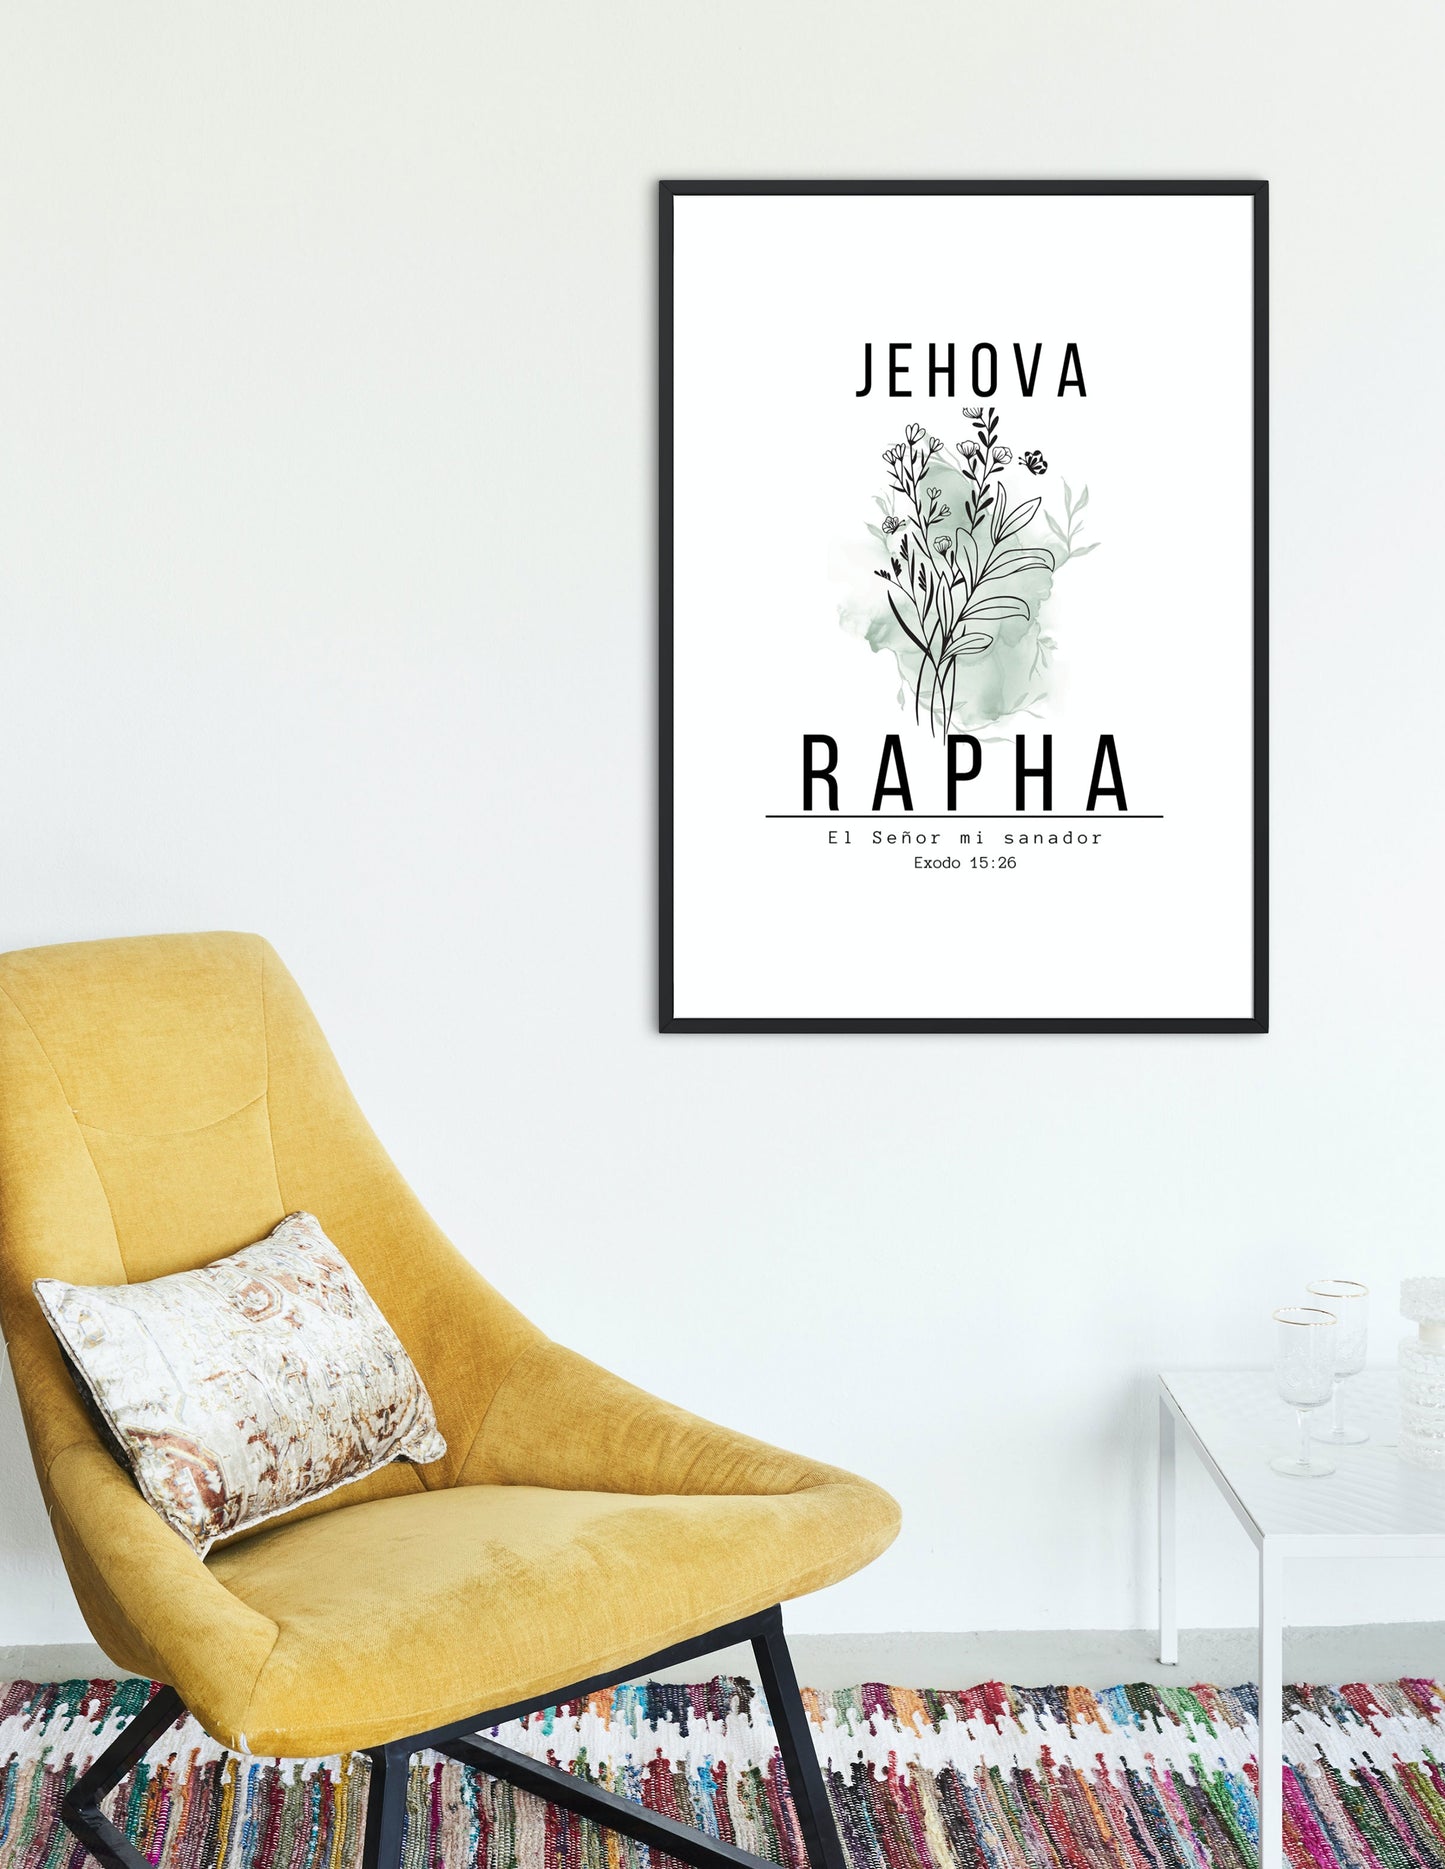 Jehová Rapha, diseño inspirado en el versículo bíblico de Éxodo 15:26